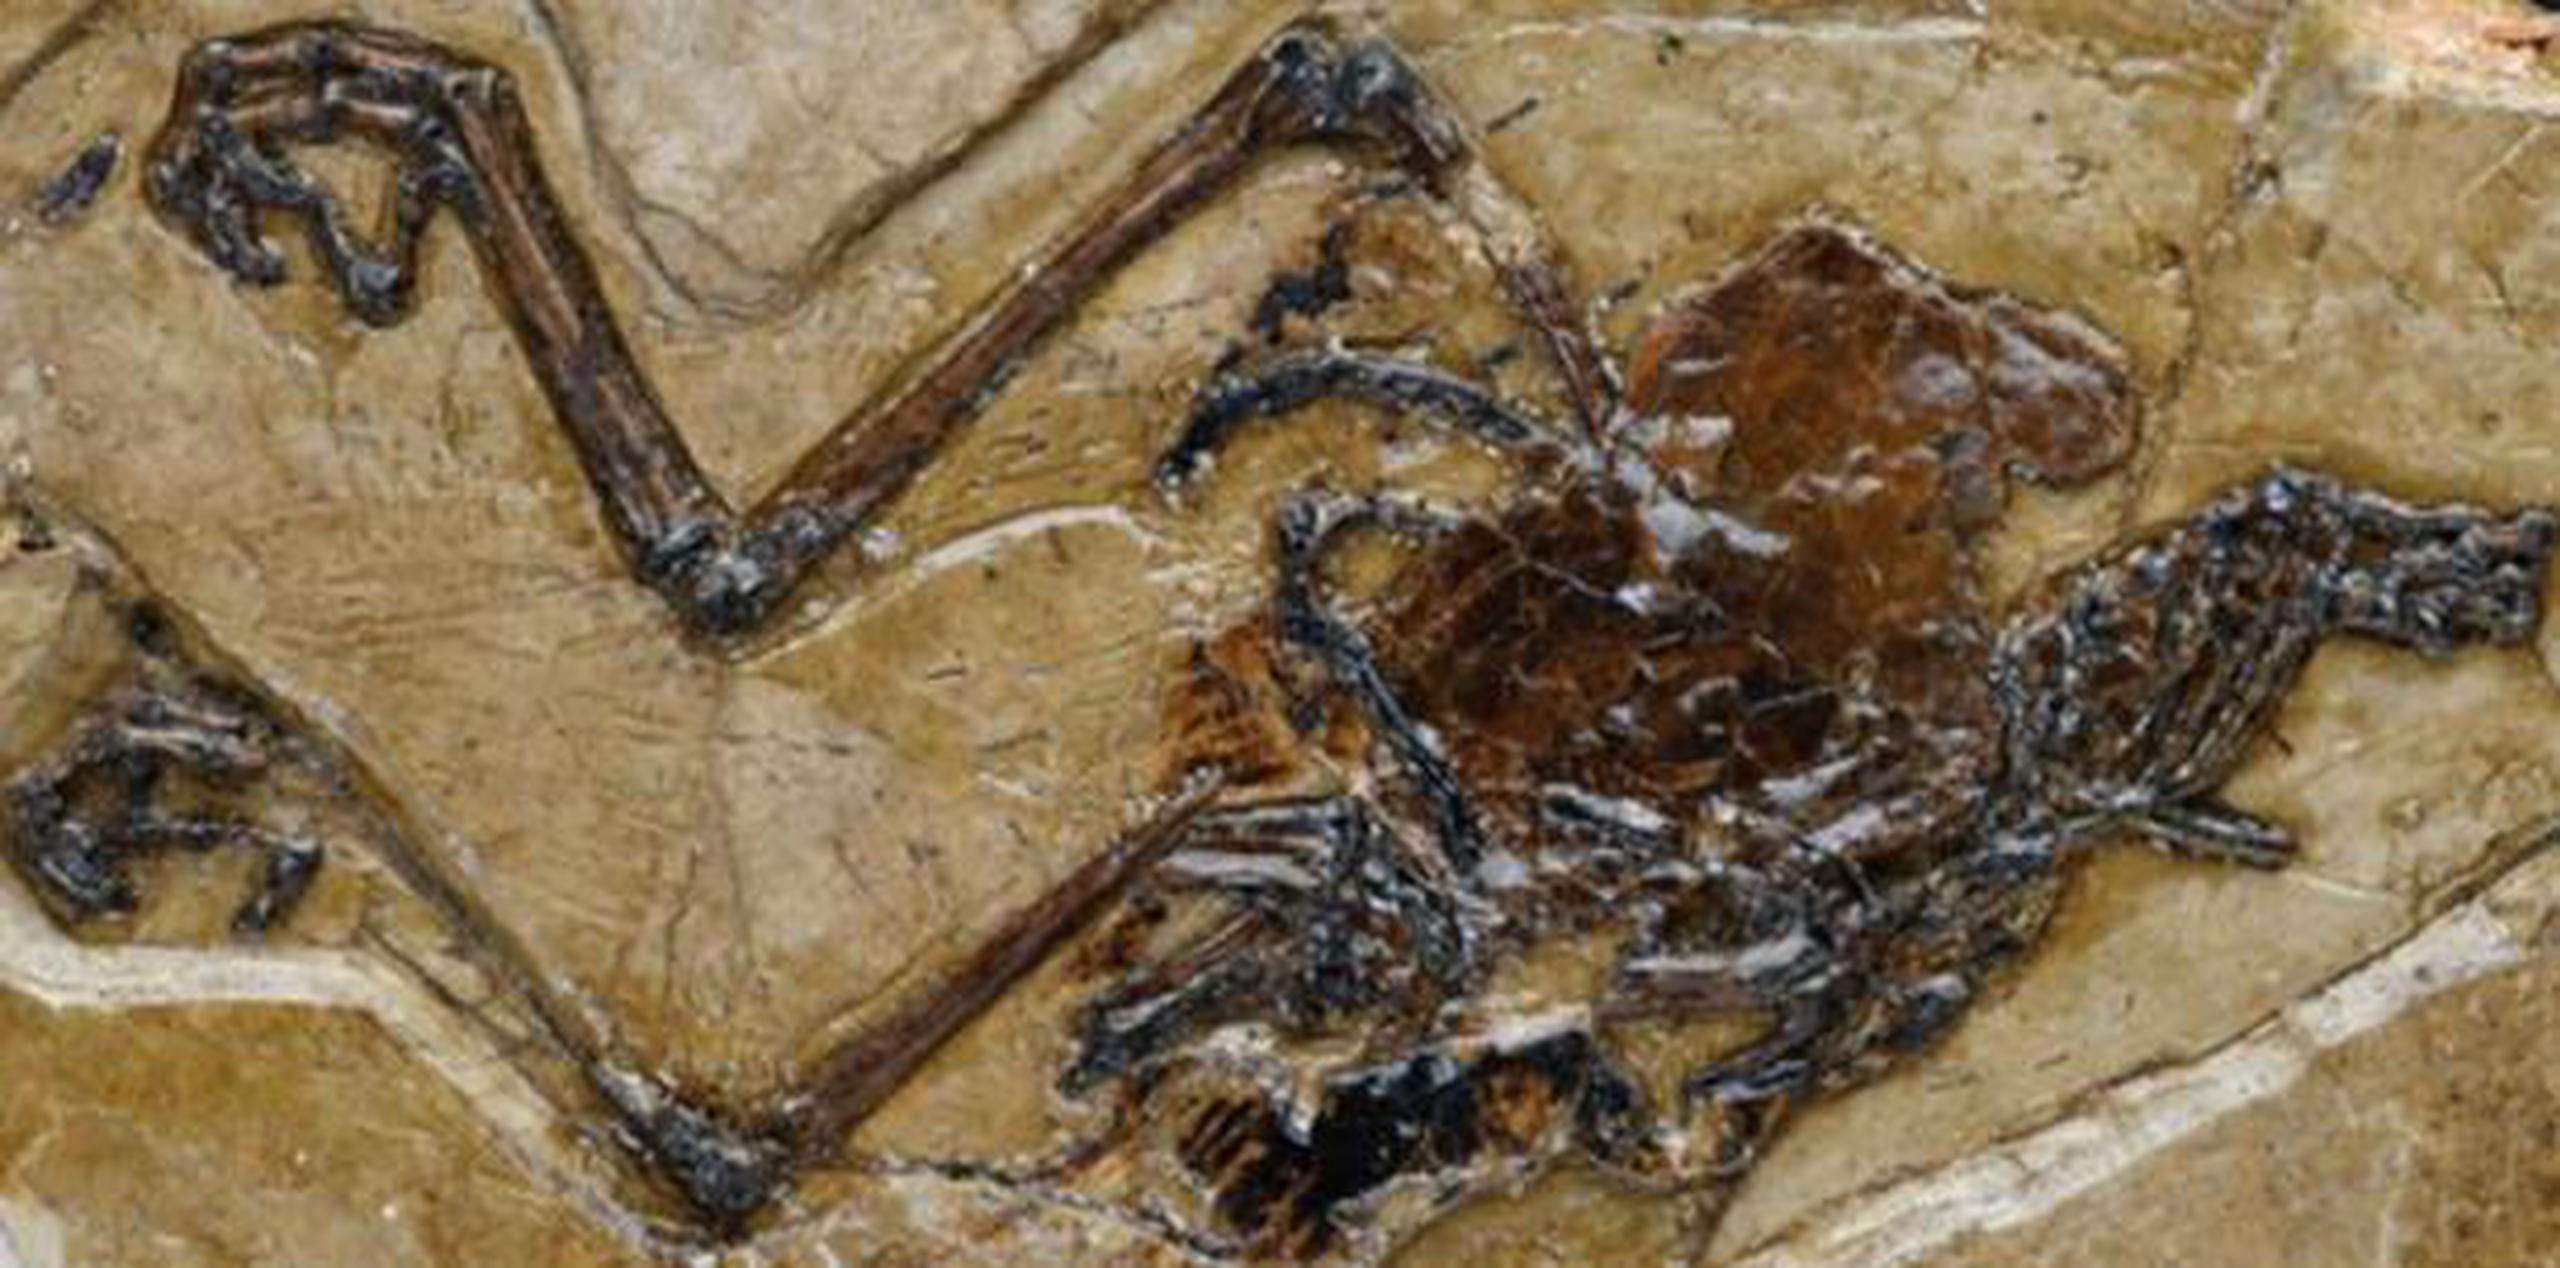 El fósil pertenece a una especie de ave llamada Avimaia schweitzerae, la cual vivió en el noroeste de China hace uno 110 millones de años. (Nature Communications / GDA)